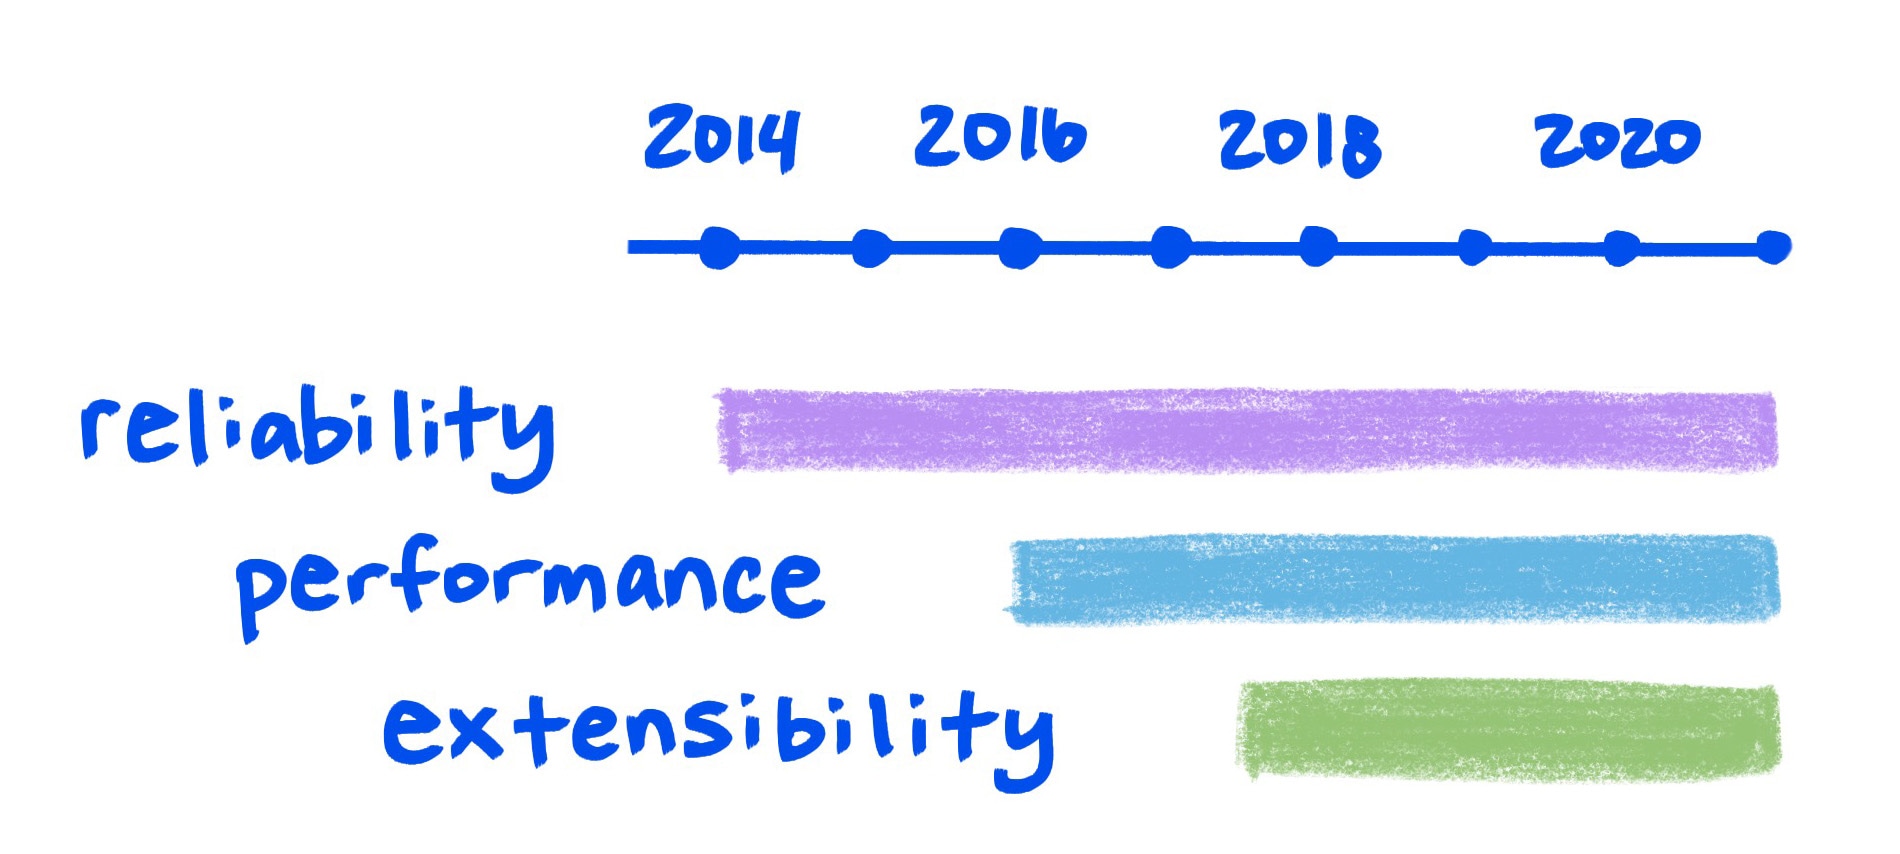 نمودار طرحی قابلیت اطمینان، عملکرد و توسعه پذیری را نشان می دهد که در طول زمان بهبود می یابد